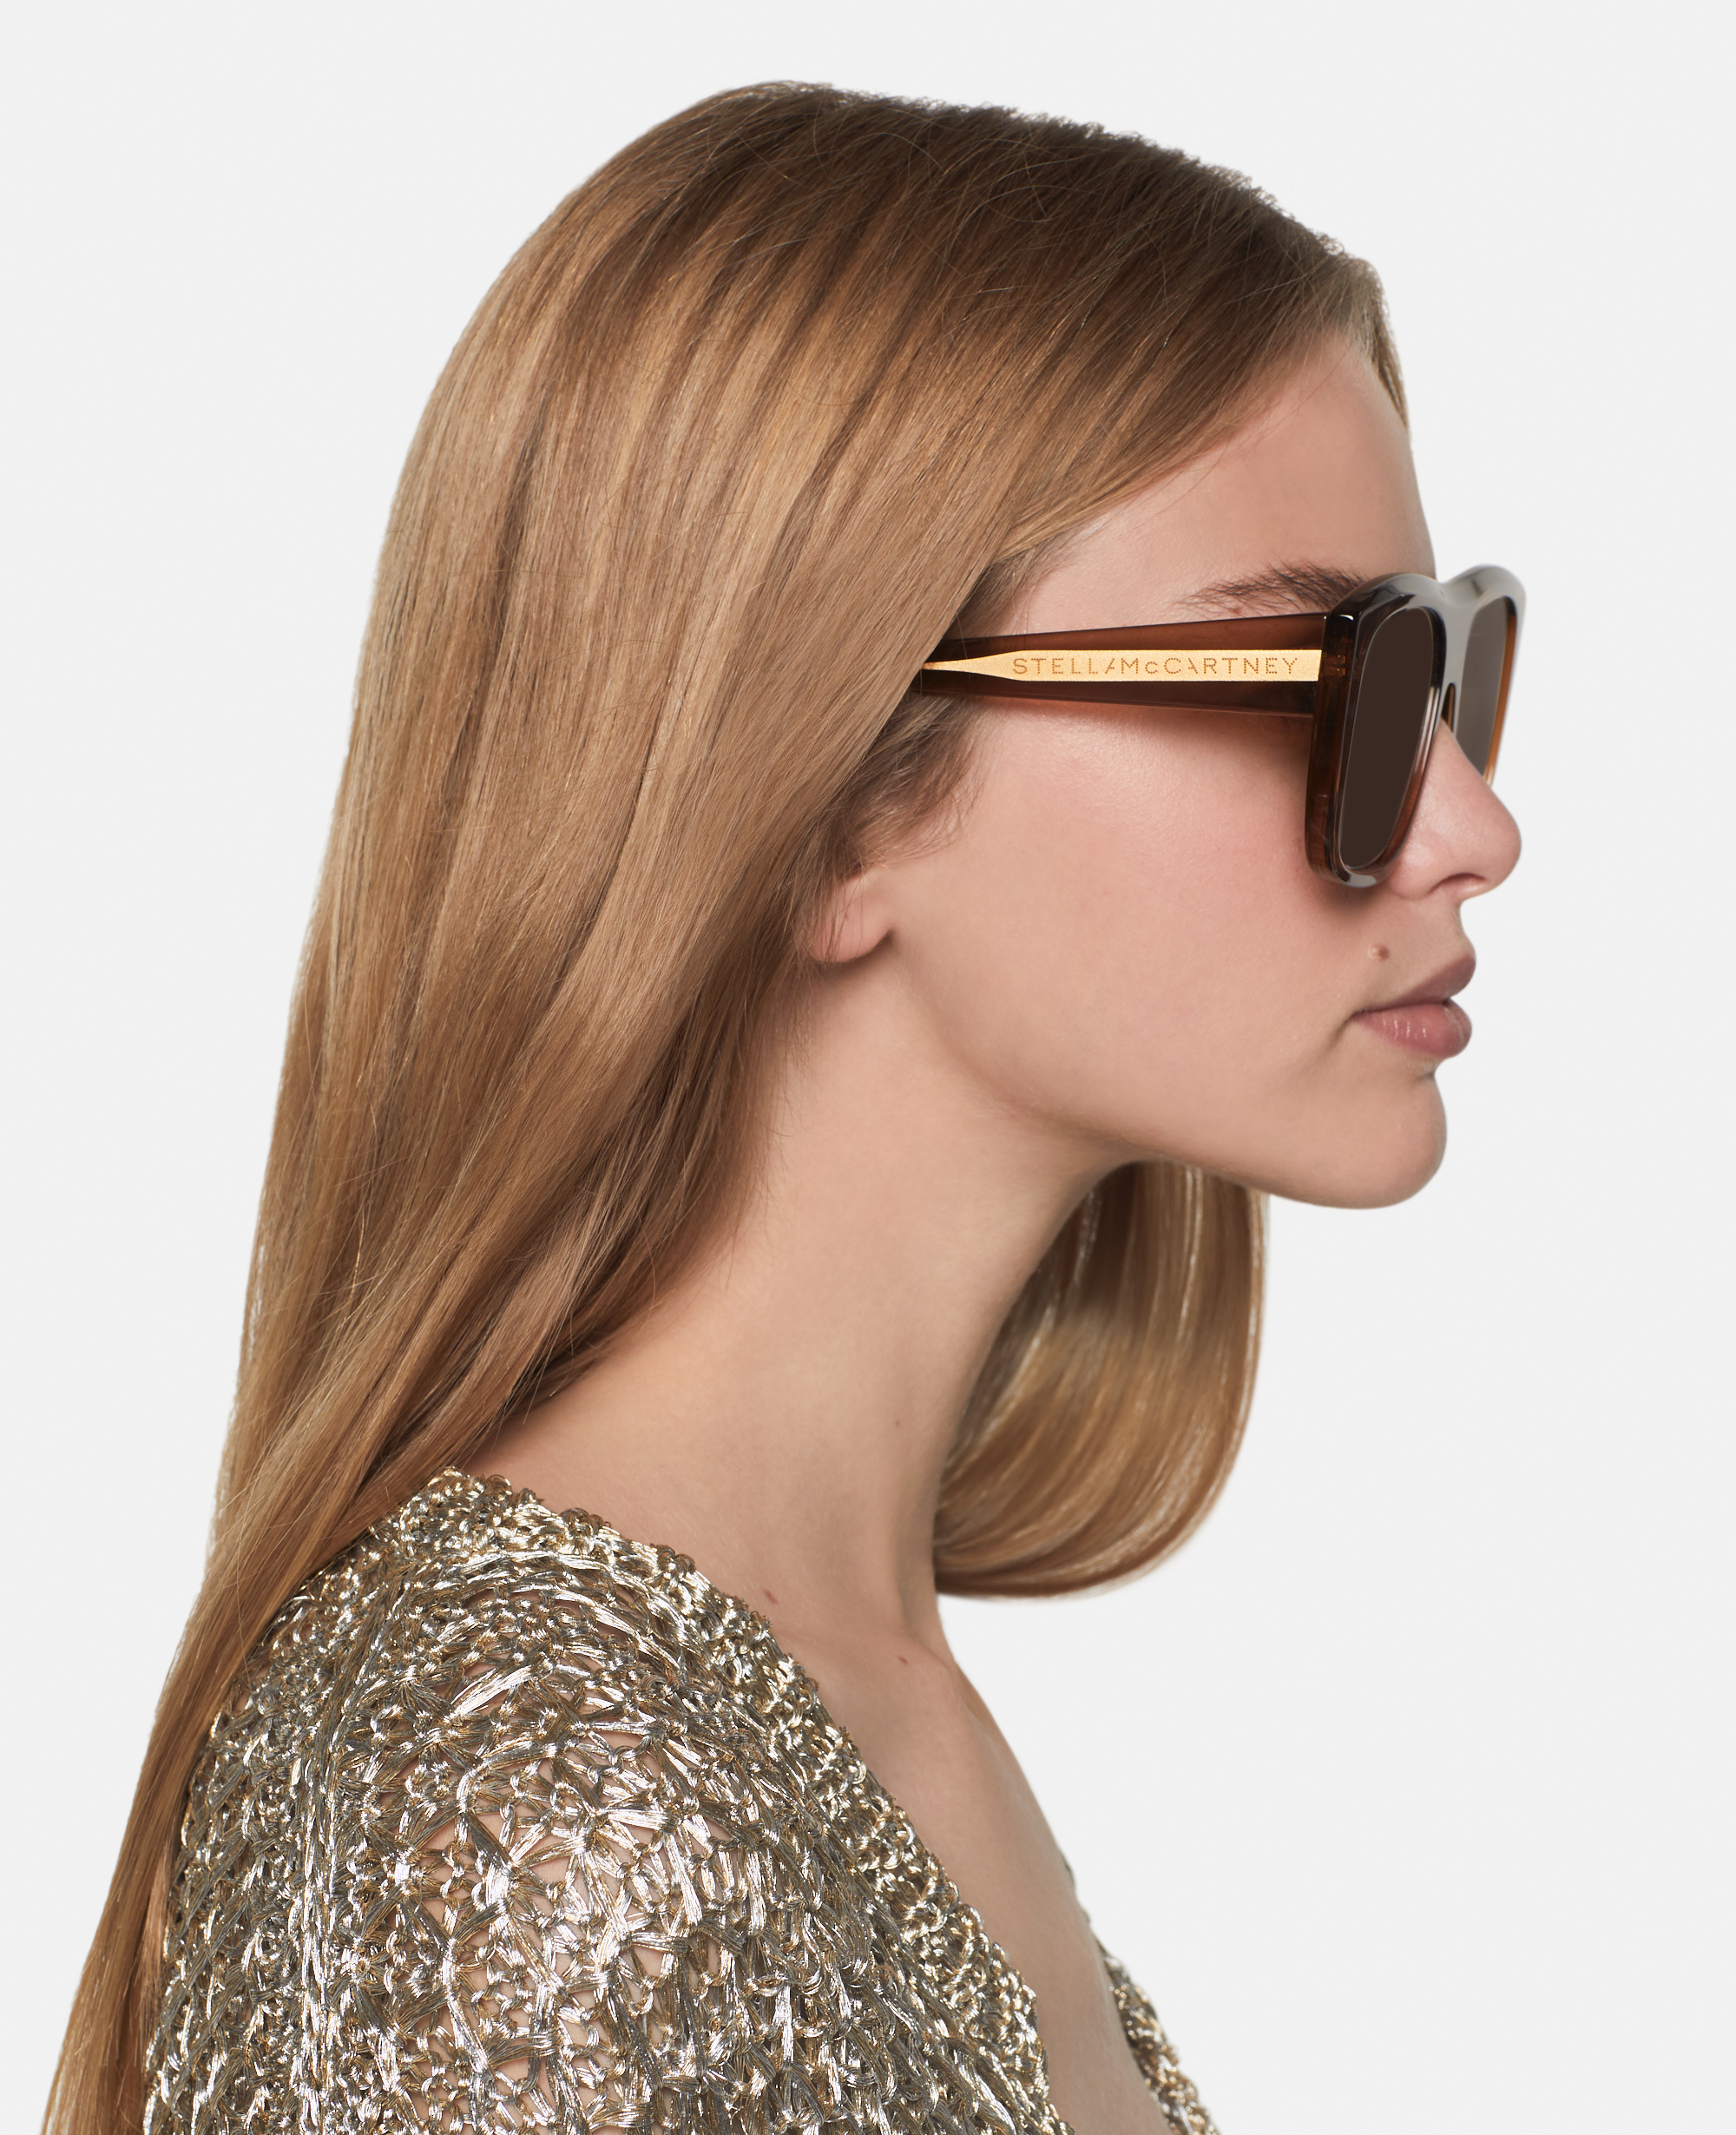 Stella Mccartney Straight-edge Square Sunglasses In Brown